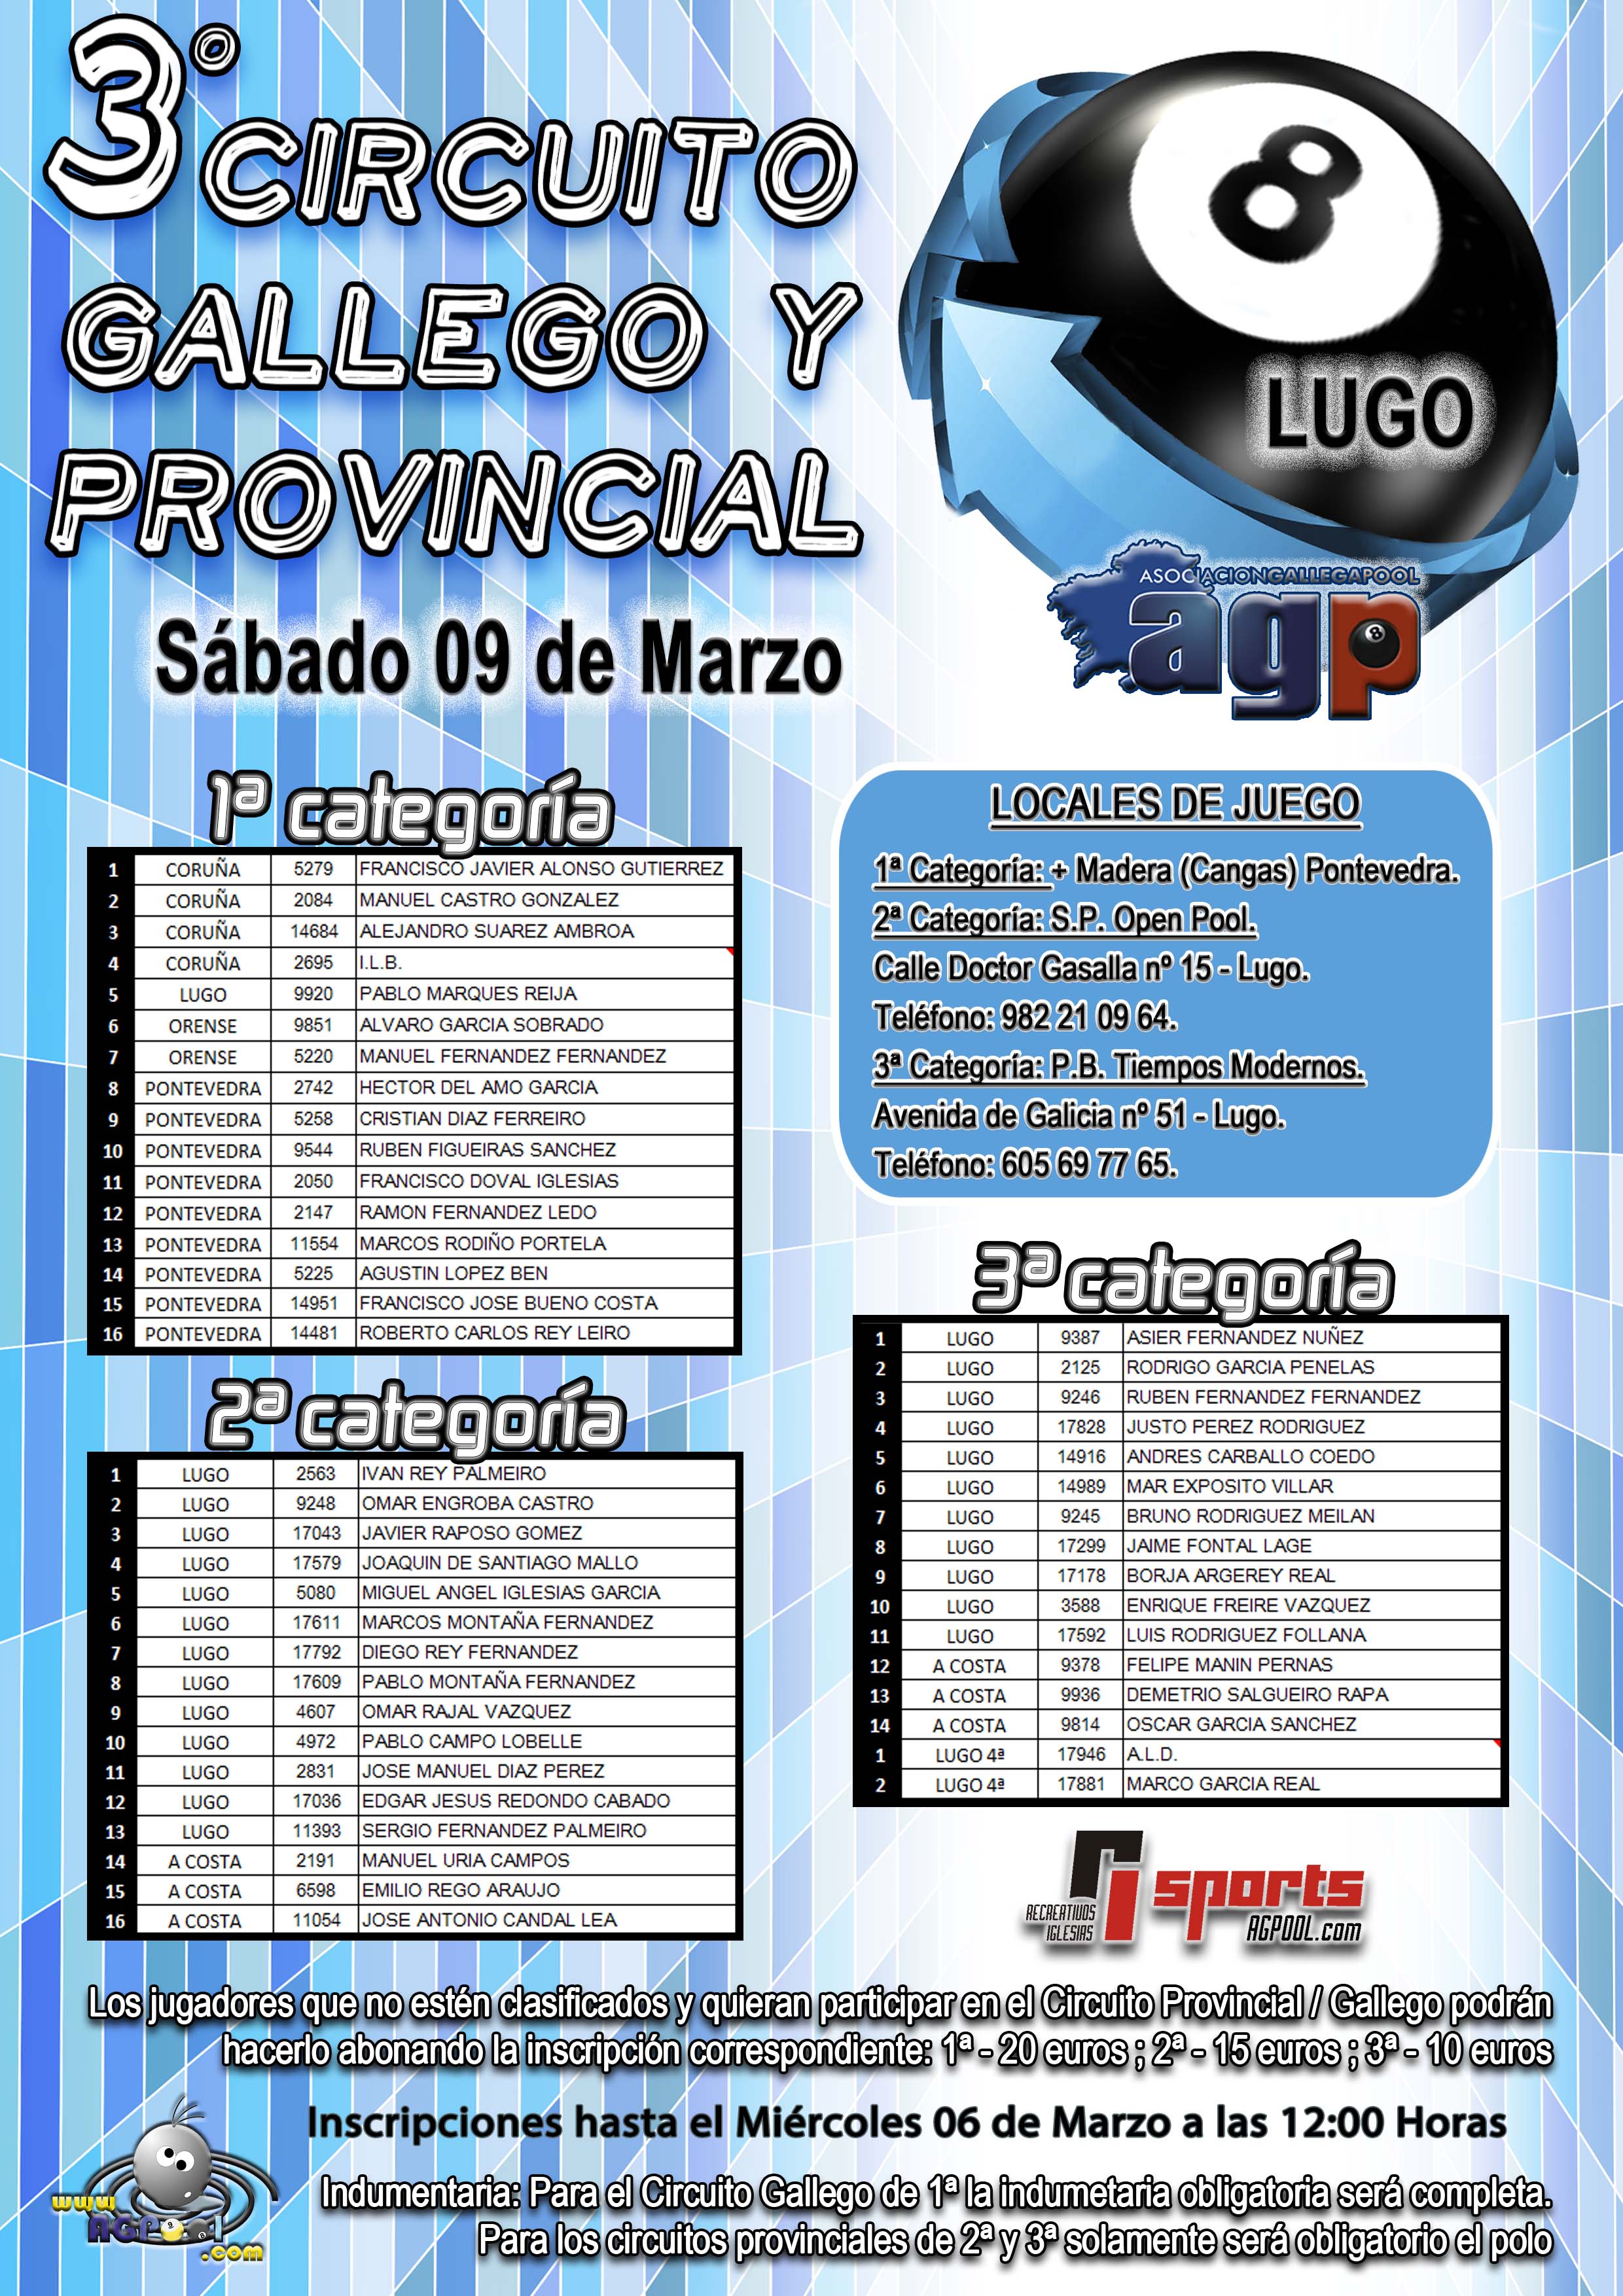 Jugadores Clasificados para el 3 Circuito Provincial - Lugo